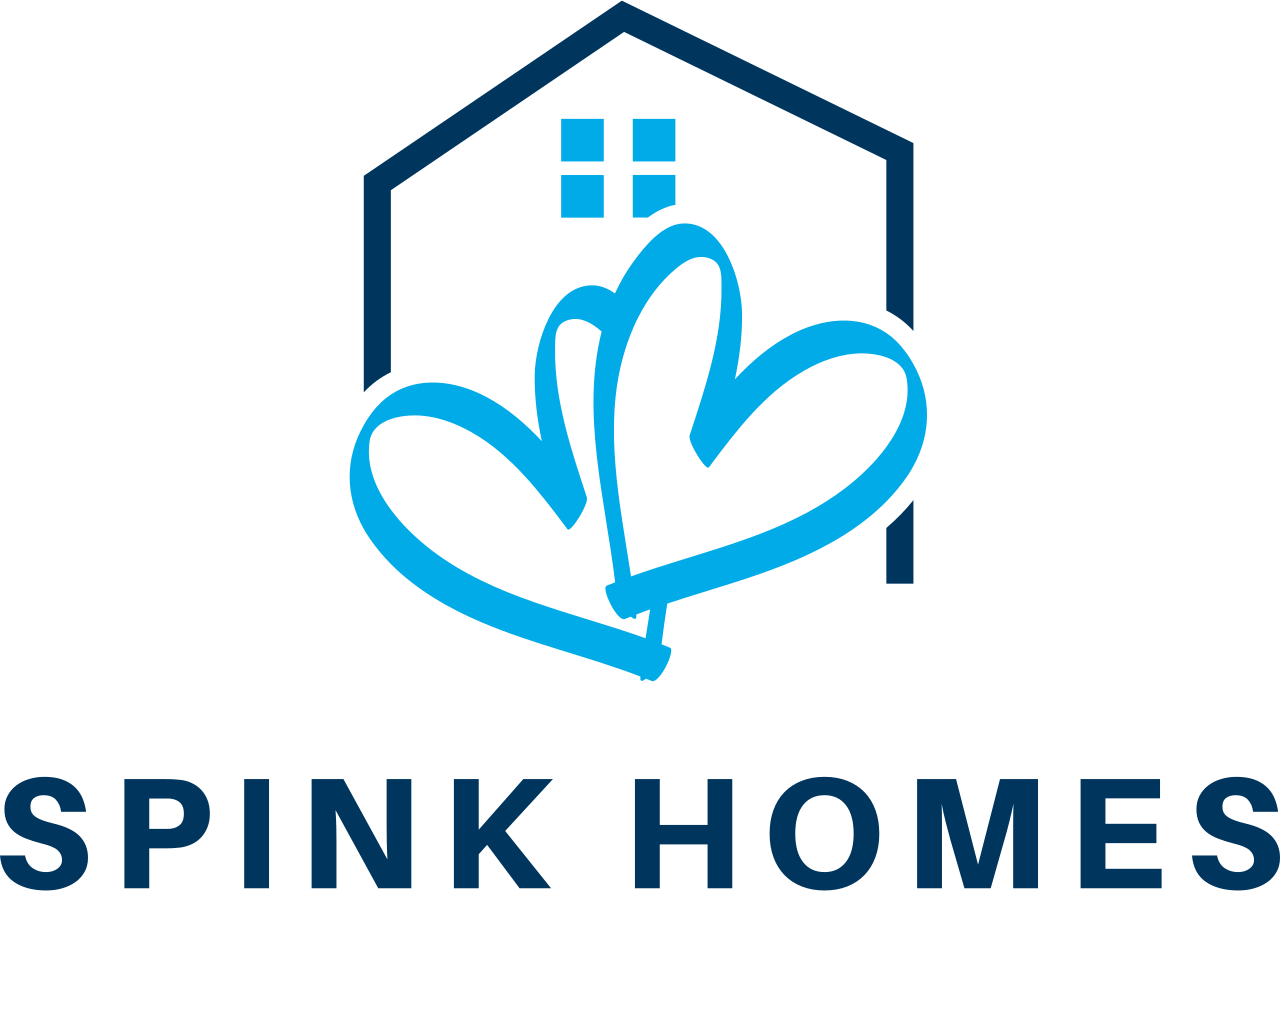 Spink Homes's logo